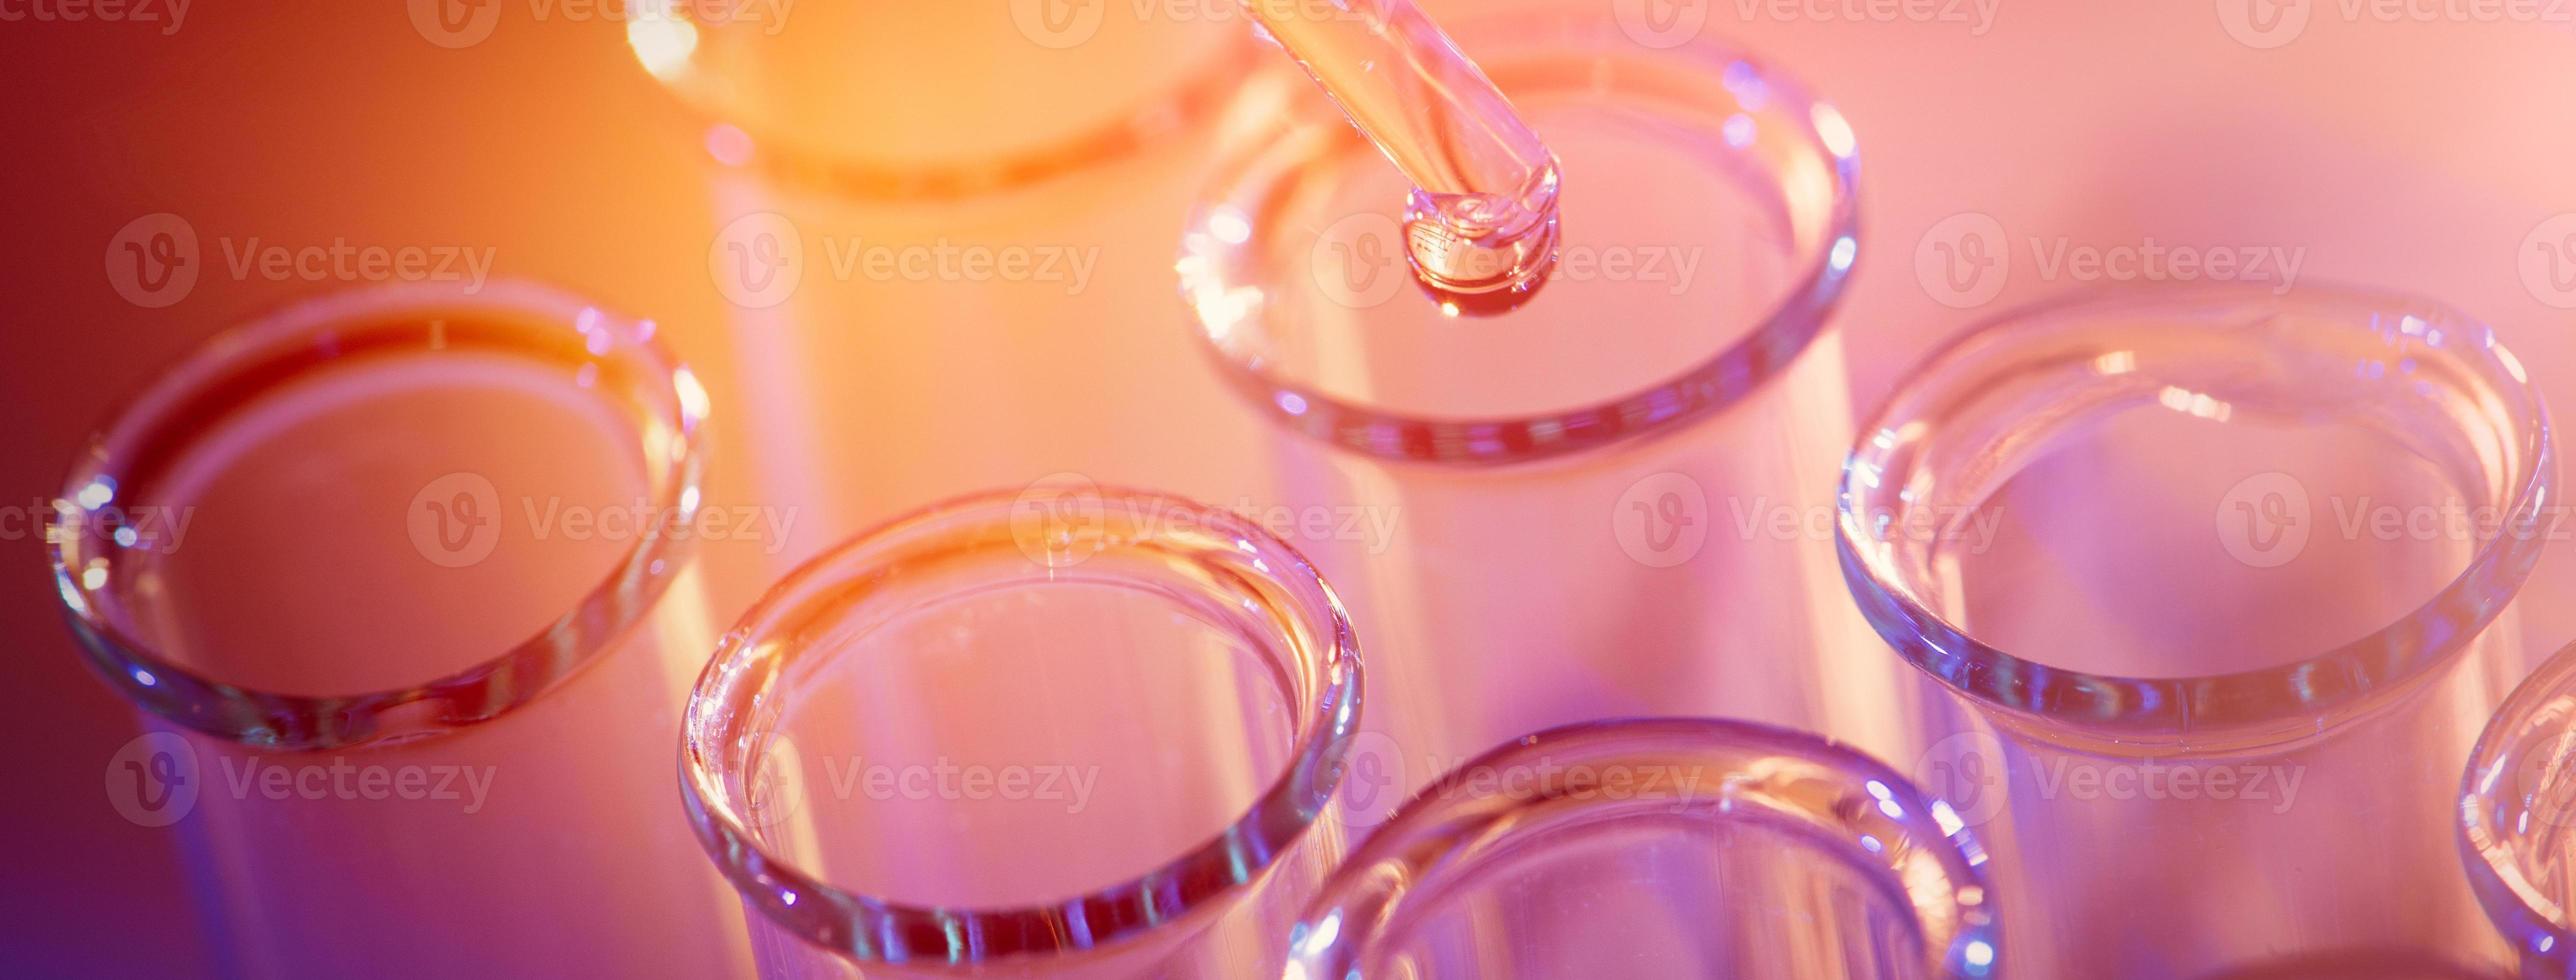 fileira de tubos de ensaio. conceito de laboratório médico ou de ciências, gota líquida com conta-gotas em fundo de tom azul, close-up, imagem de microfotografia. foto